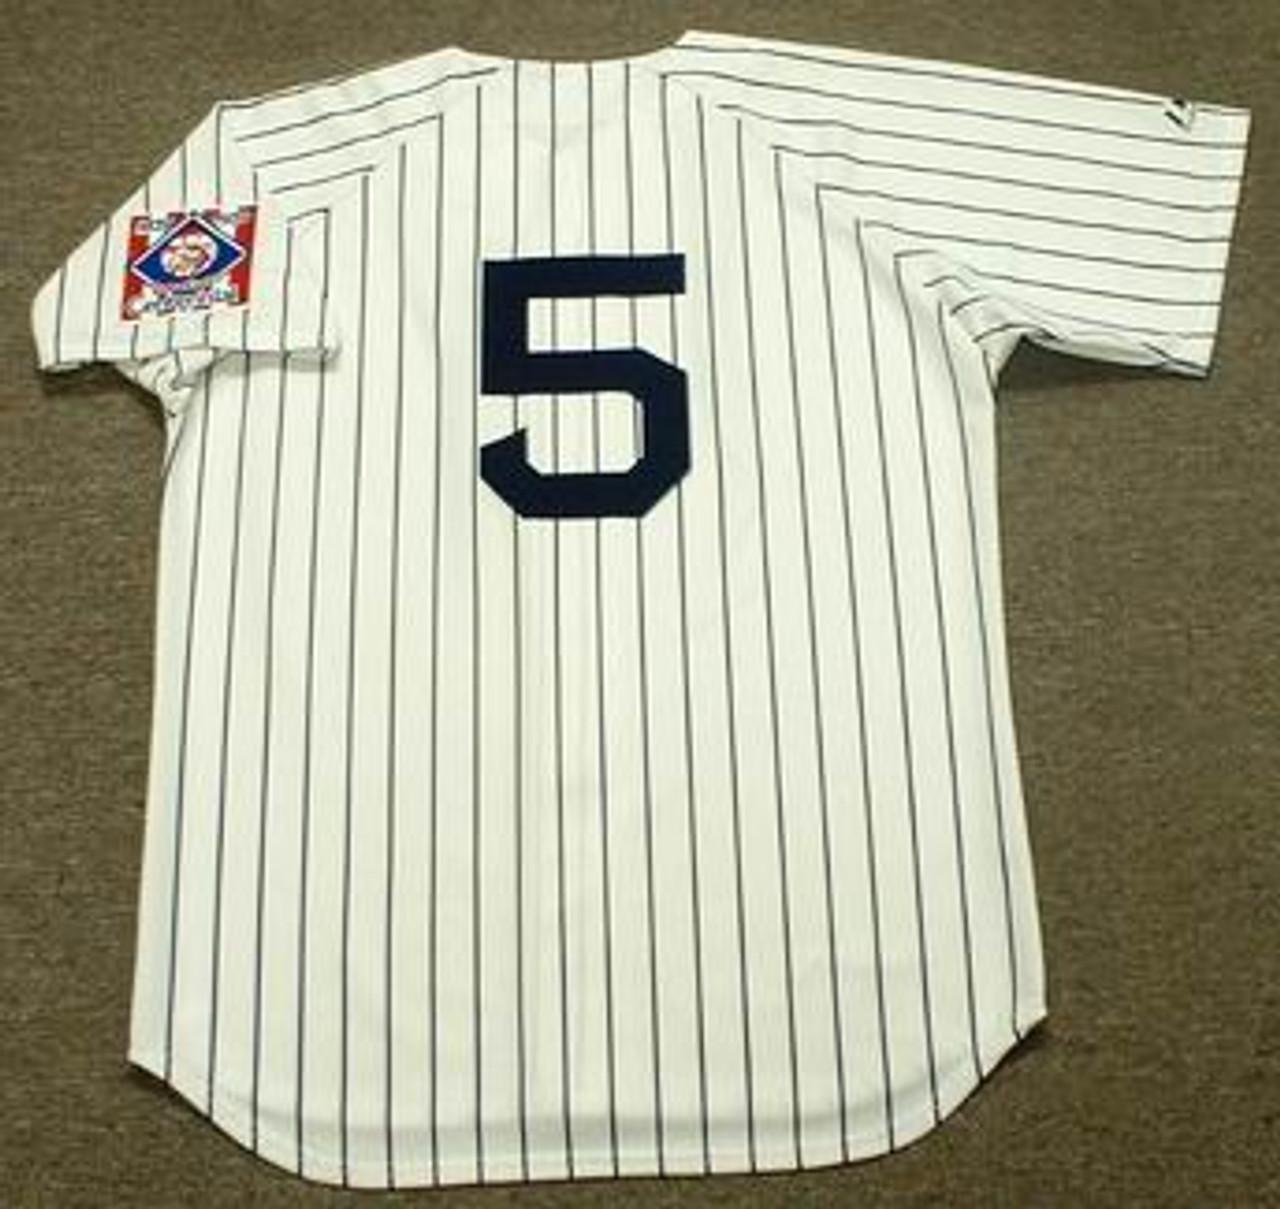 Joe DiMaggio New York Yankees Vintage Style Jersey – Best Sports Jerseys